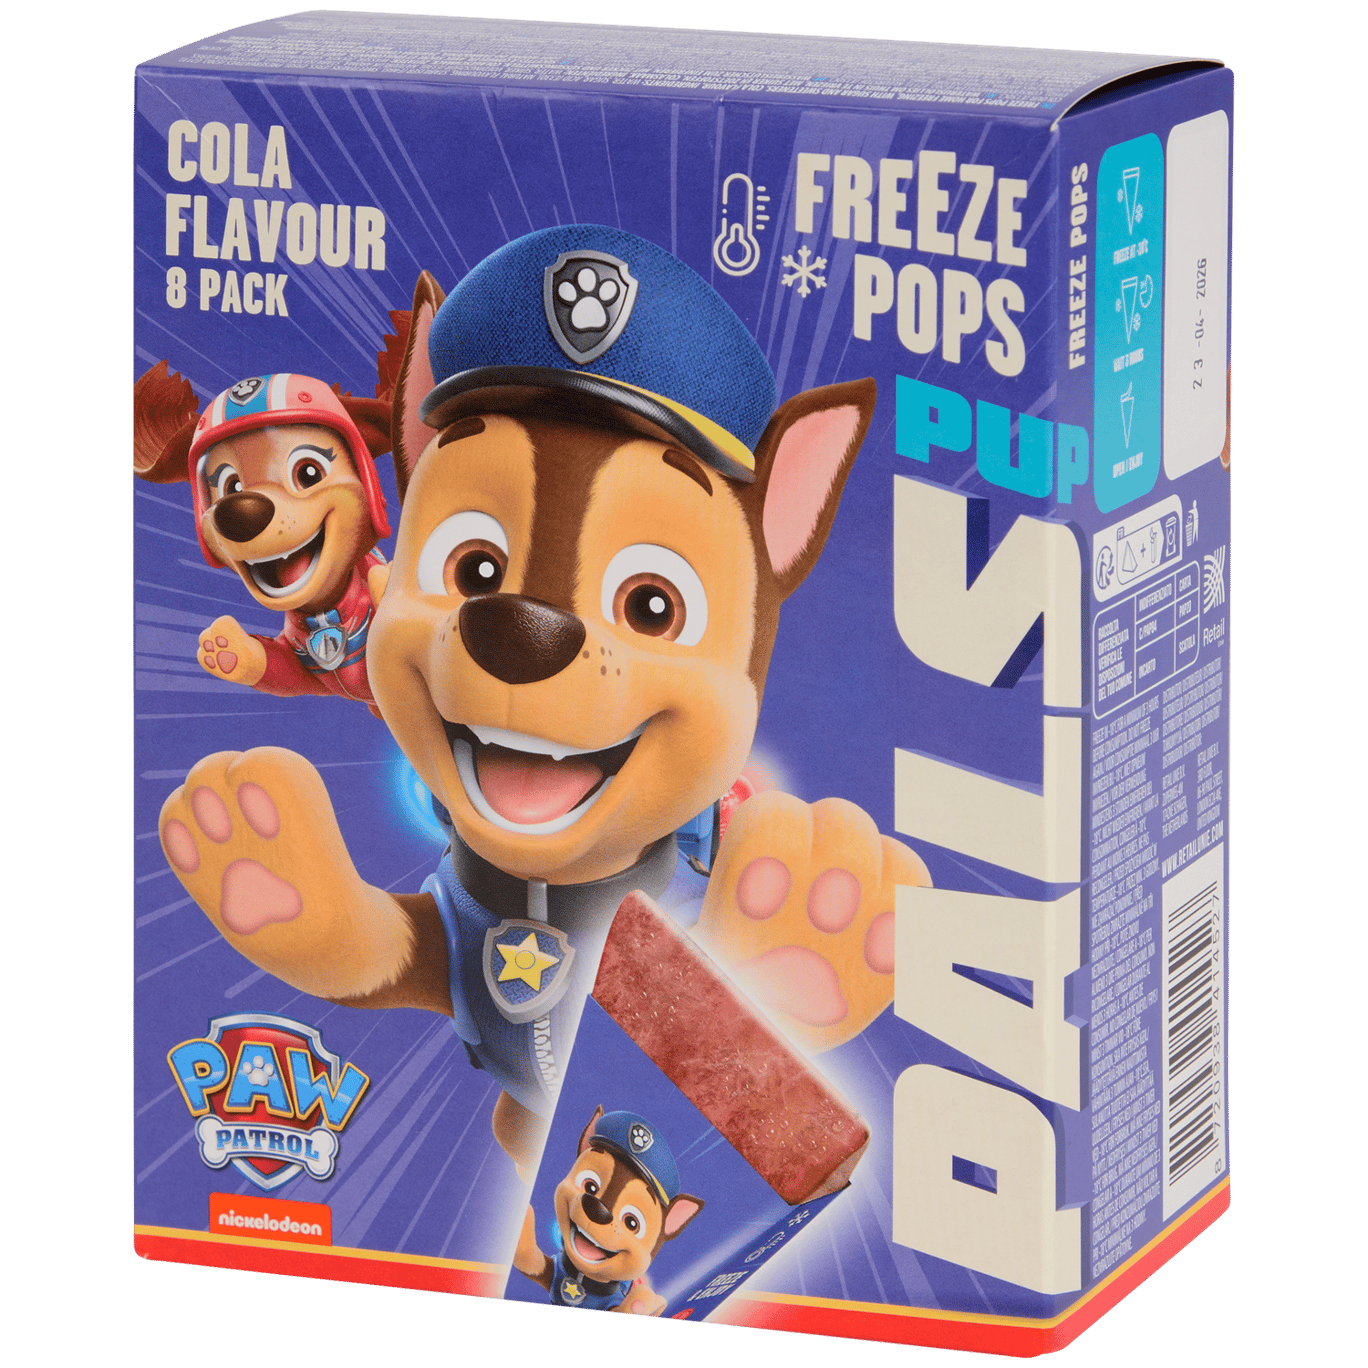 Polos Freeze Pops Paw Patrol Cola